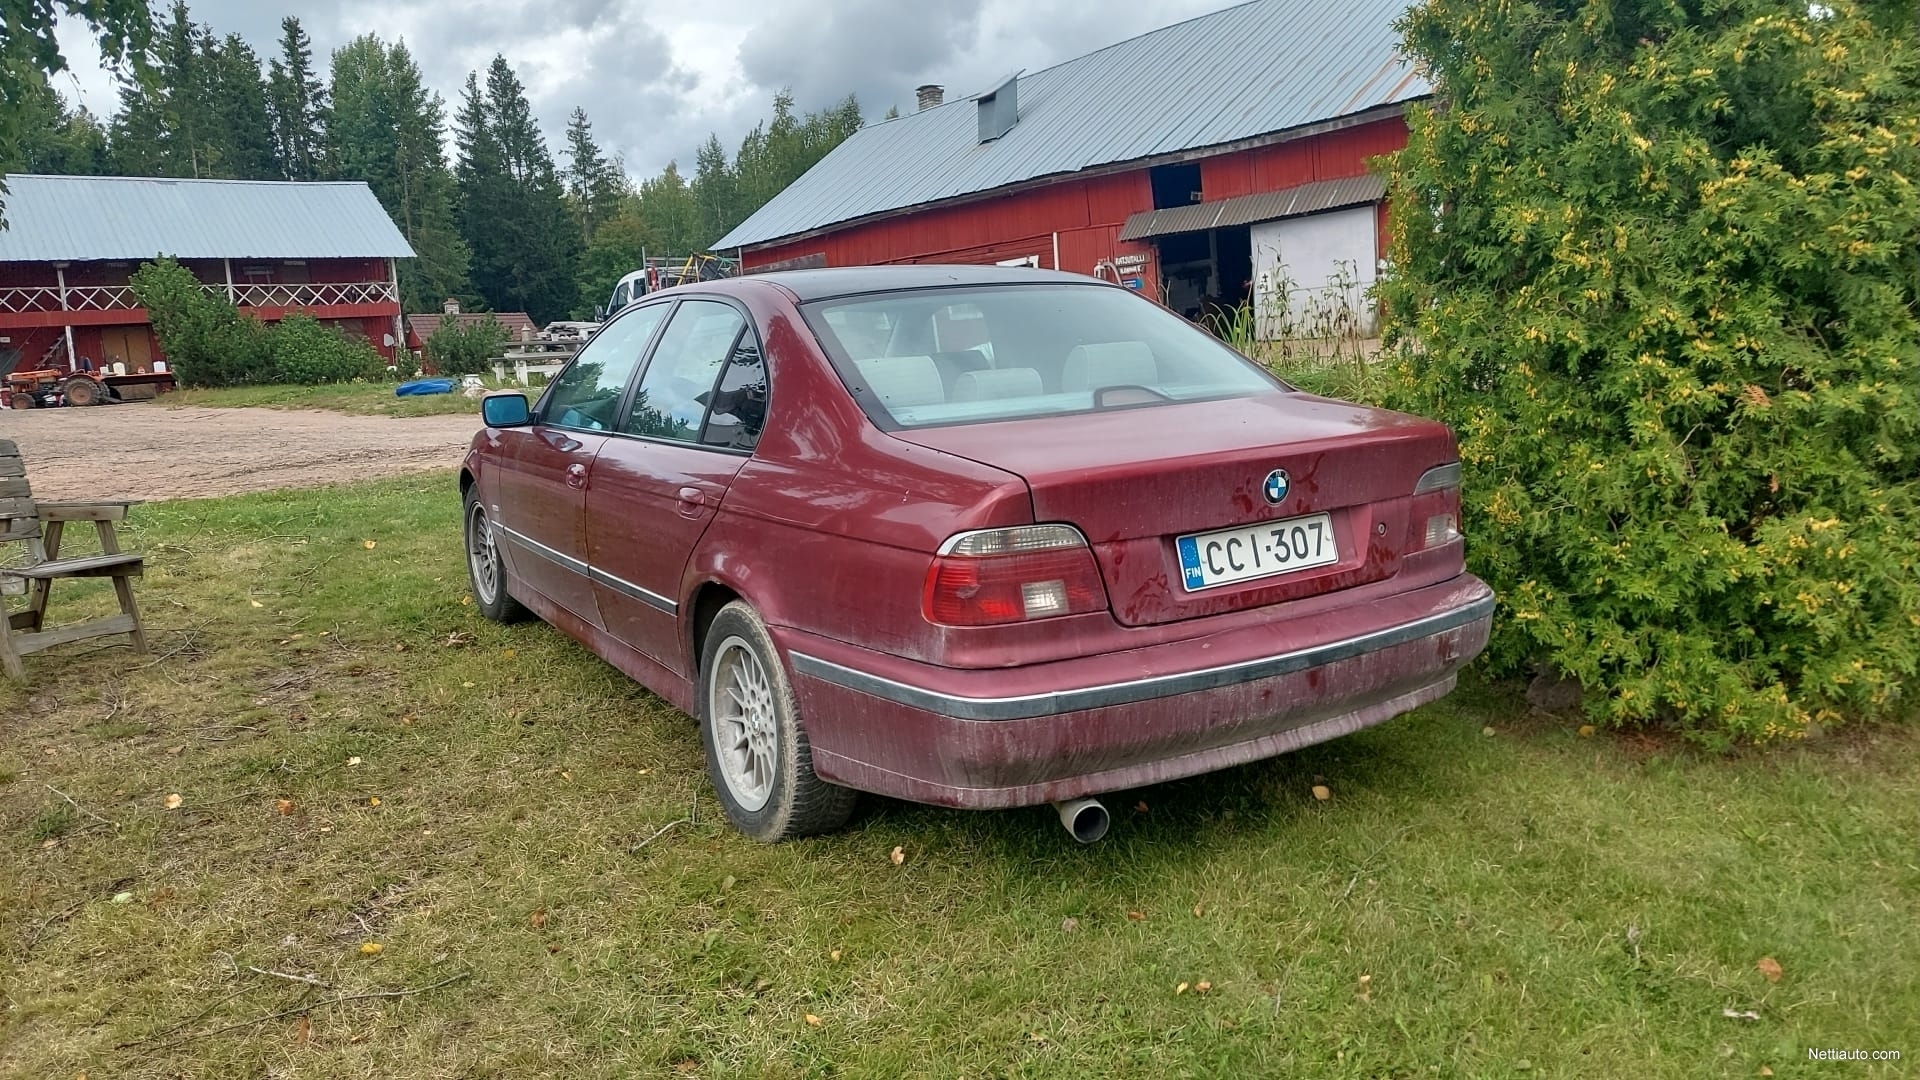 BMW 520 i 4d Sedan 1997 - Used vehicle - Nettiauto